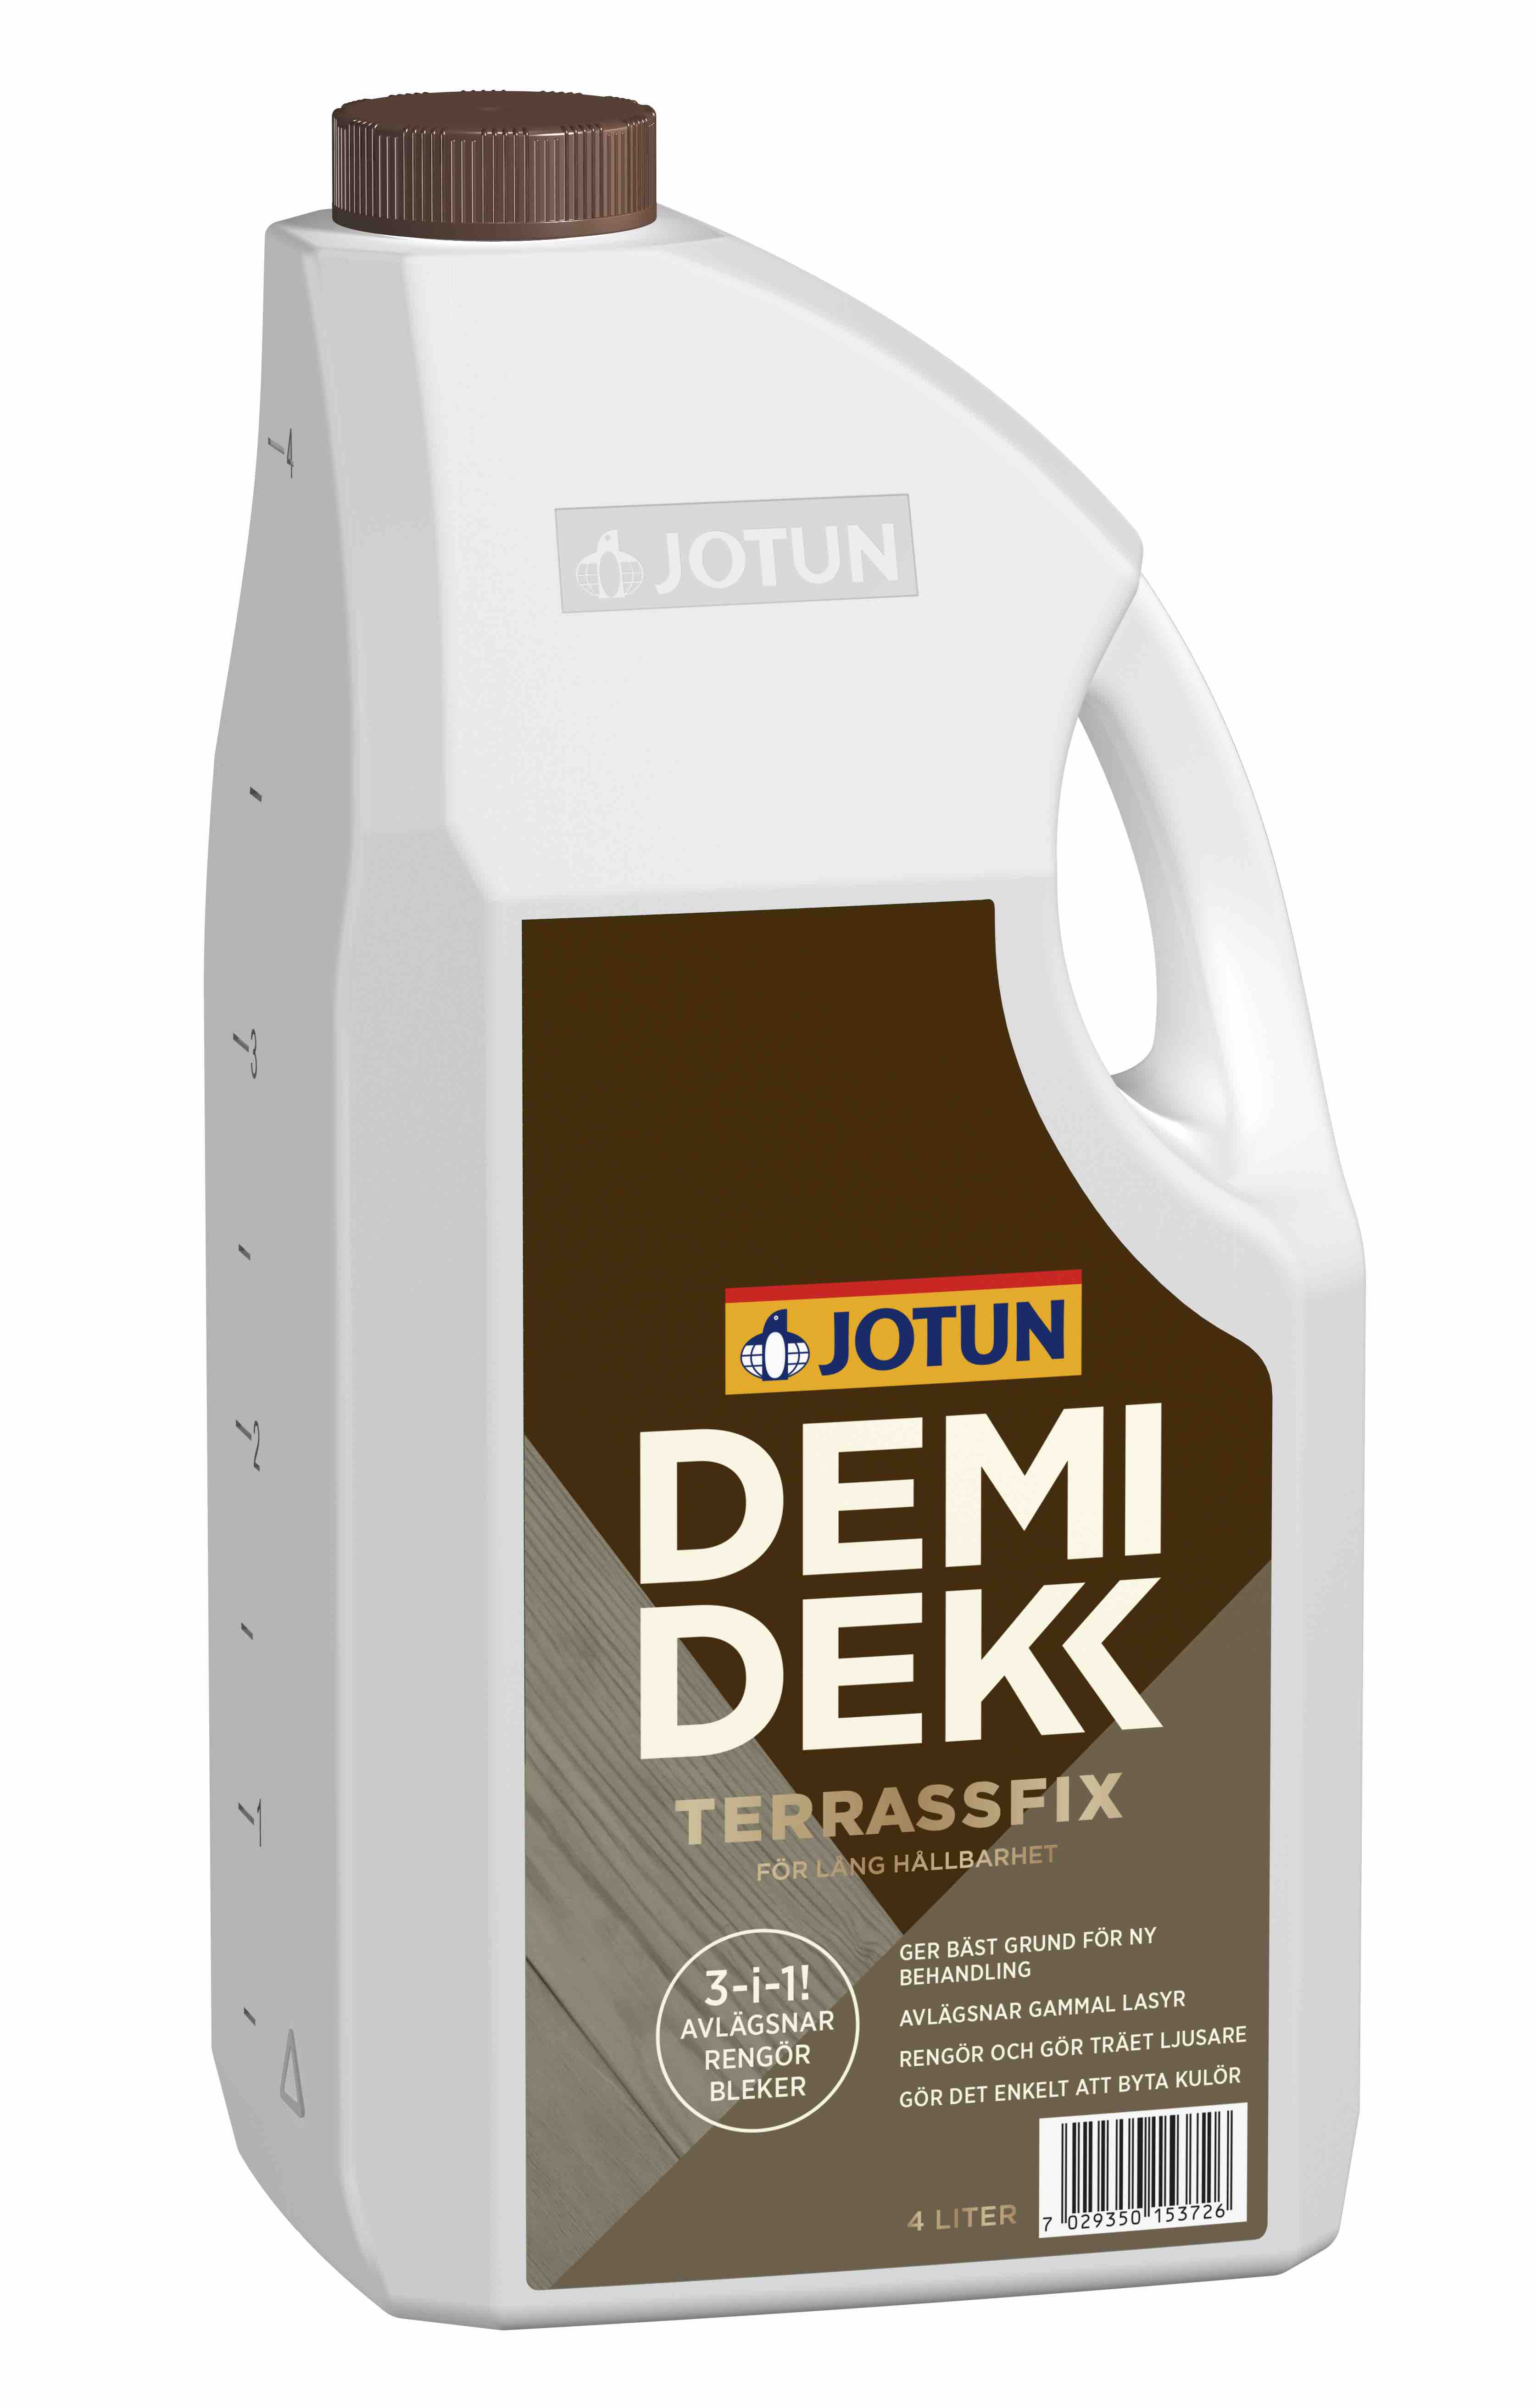 Jotun Demidekk Terrassfix nieuwe verpakking